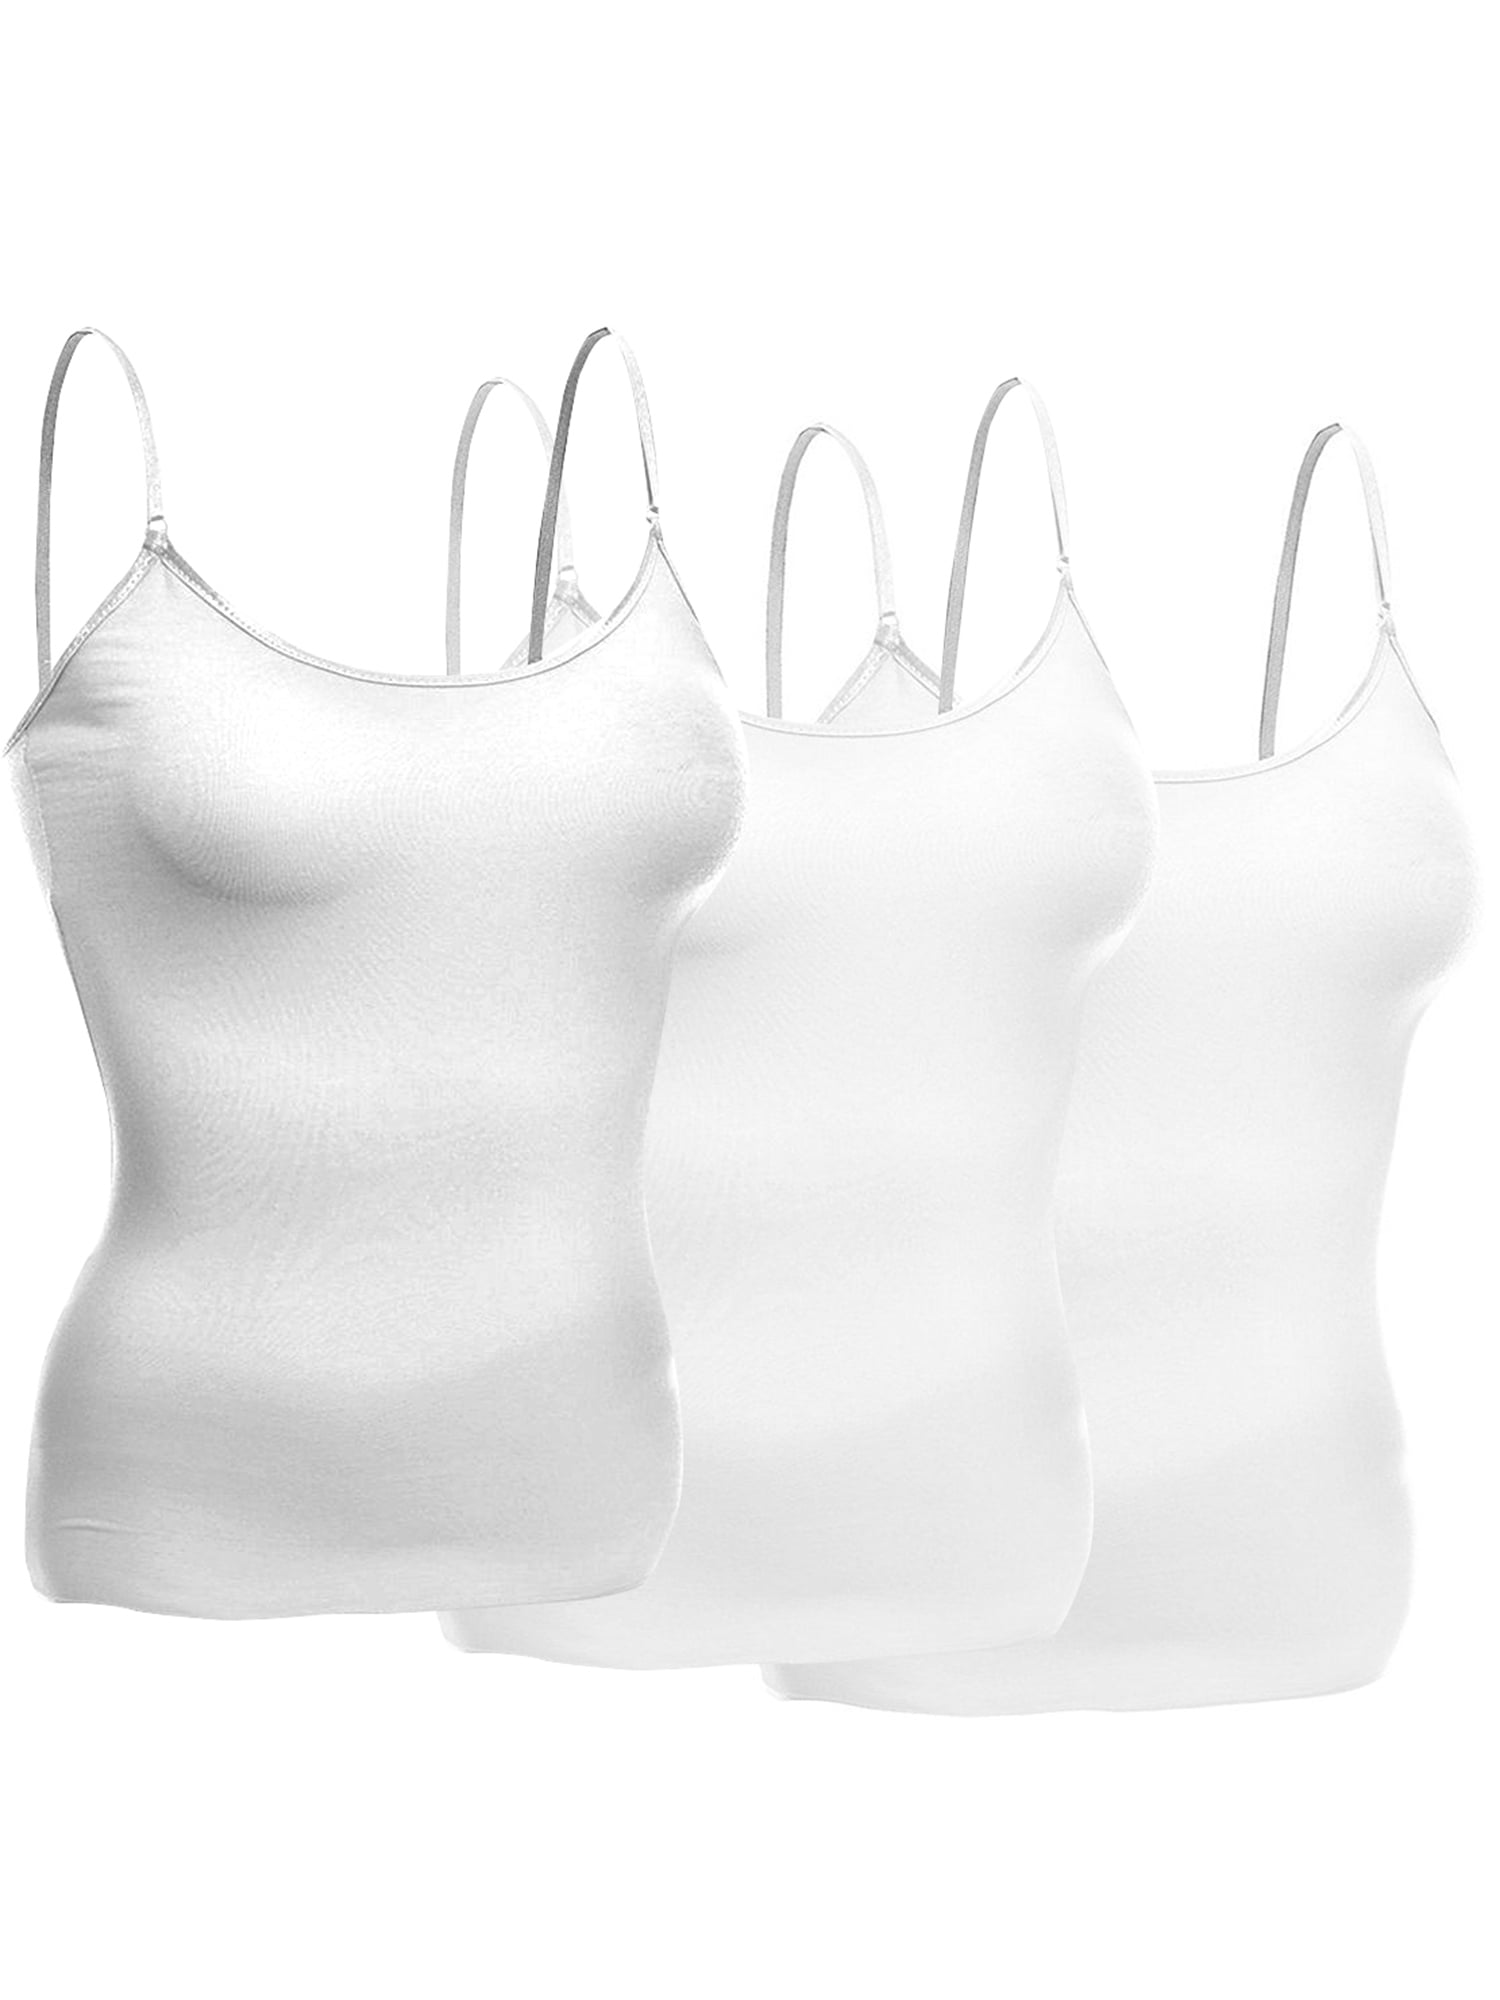 Emmalise Women's Basic Short Camisole Adjustable Strap Layering Cami ...